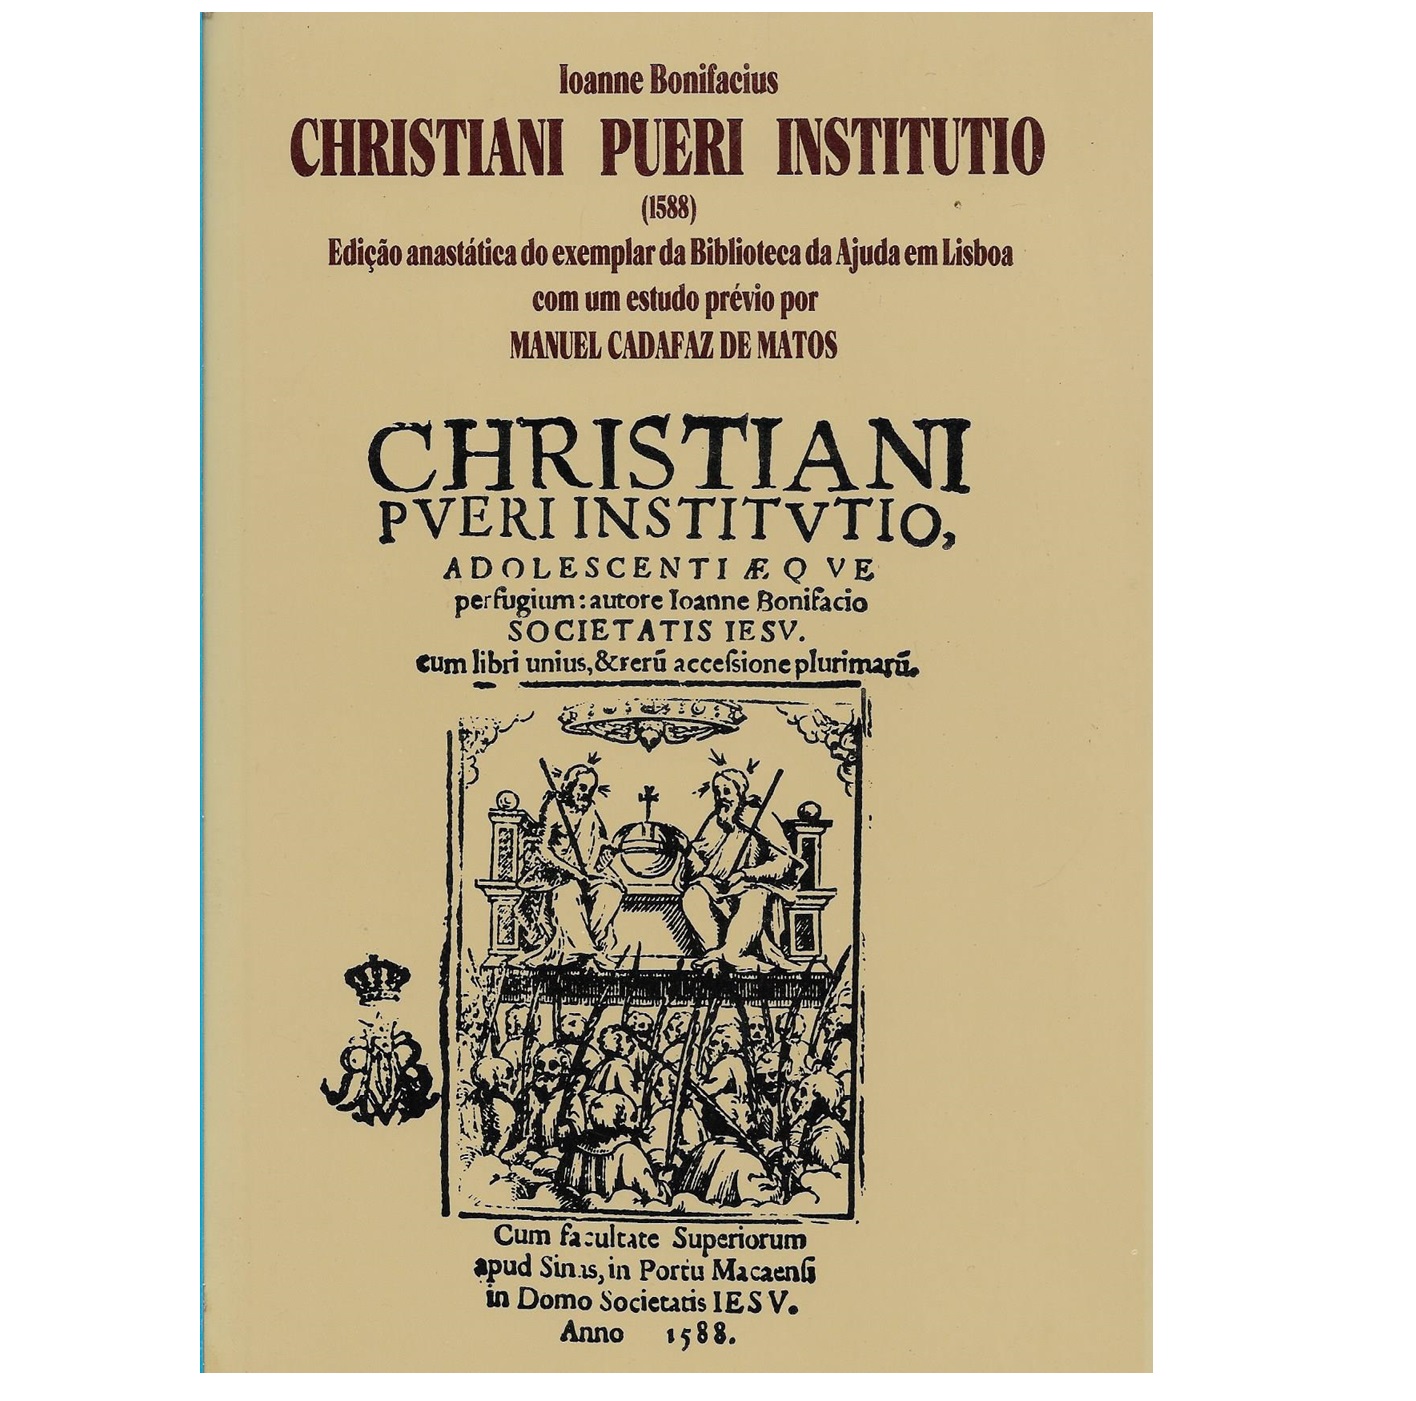 CHRISTIANI PUERI INSTITUTIO (1588)